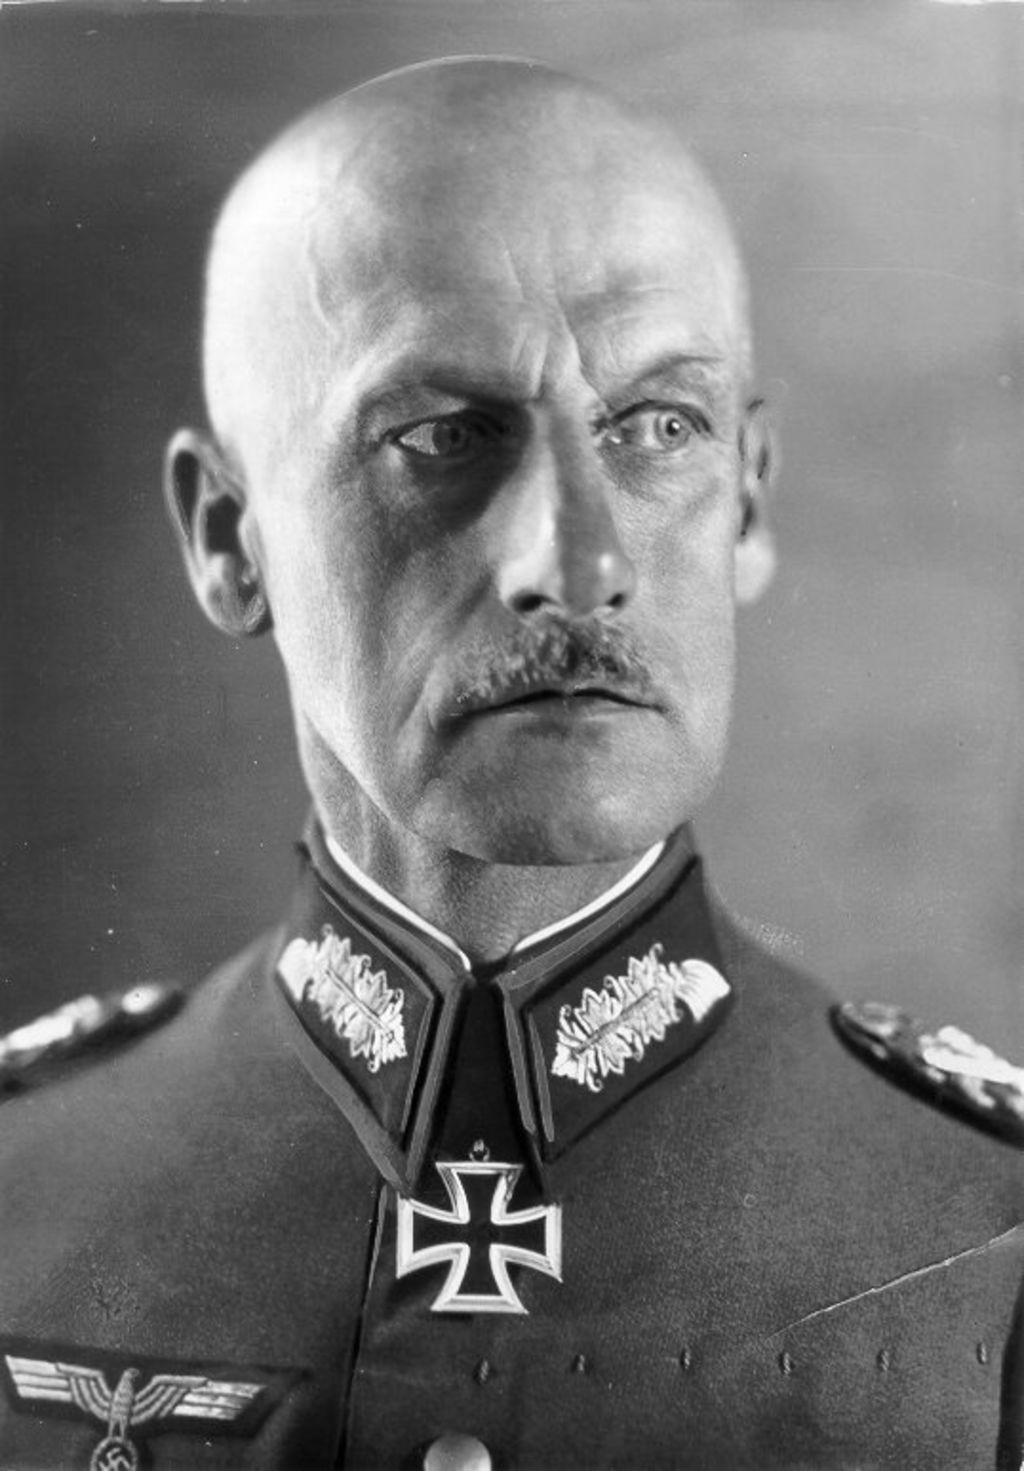 Foto: Leeb, Wilhelm Ritter von, 1940-1945